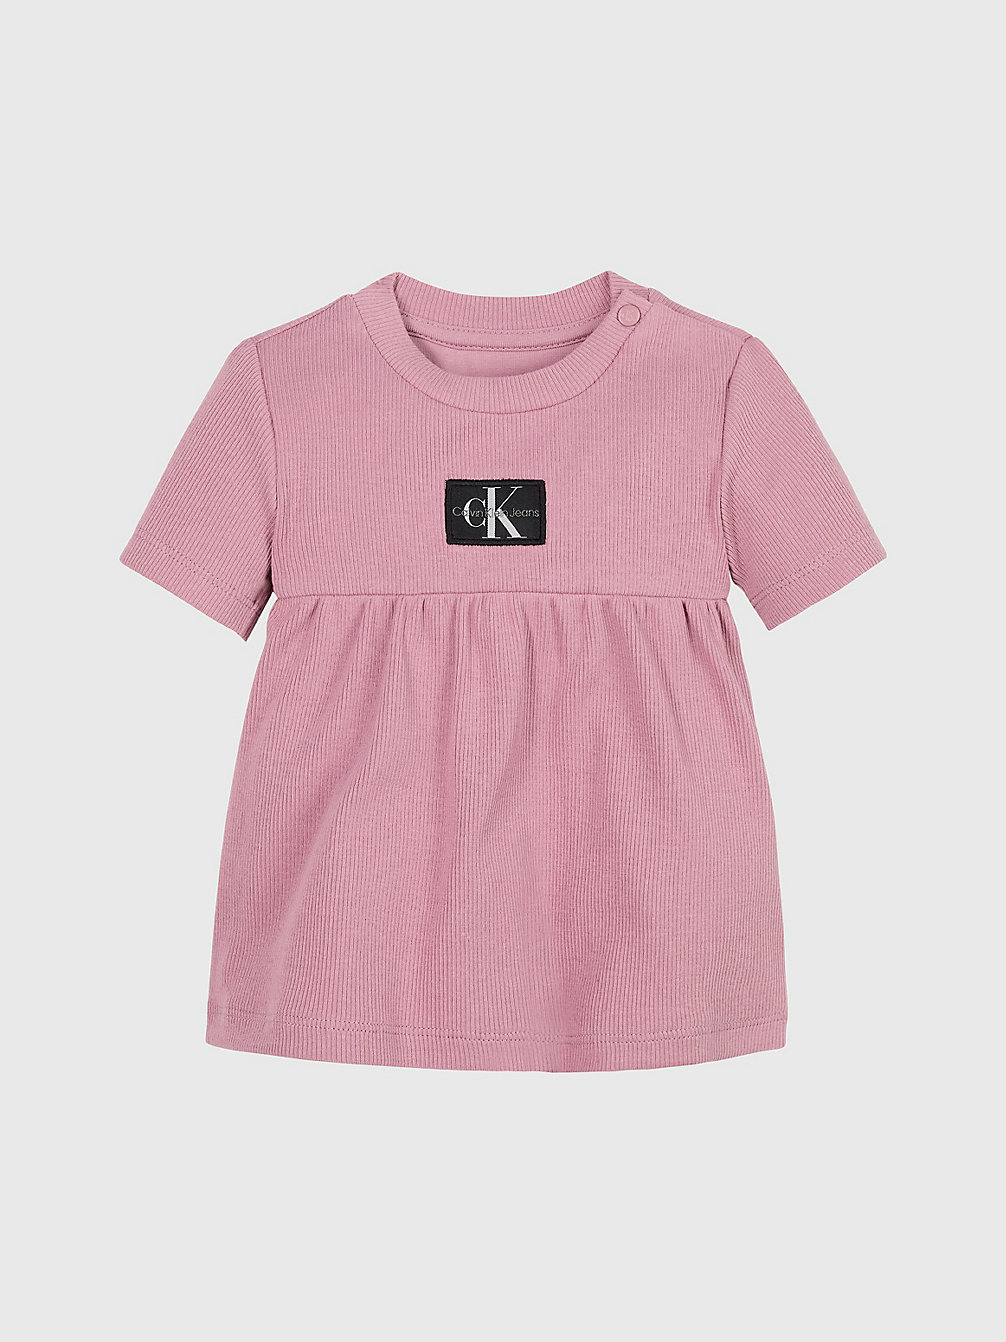 FOXGLOVE Newborn Ribbed Jersey Dress undefined undefined Calvin Klein